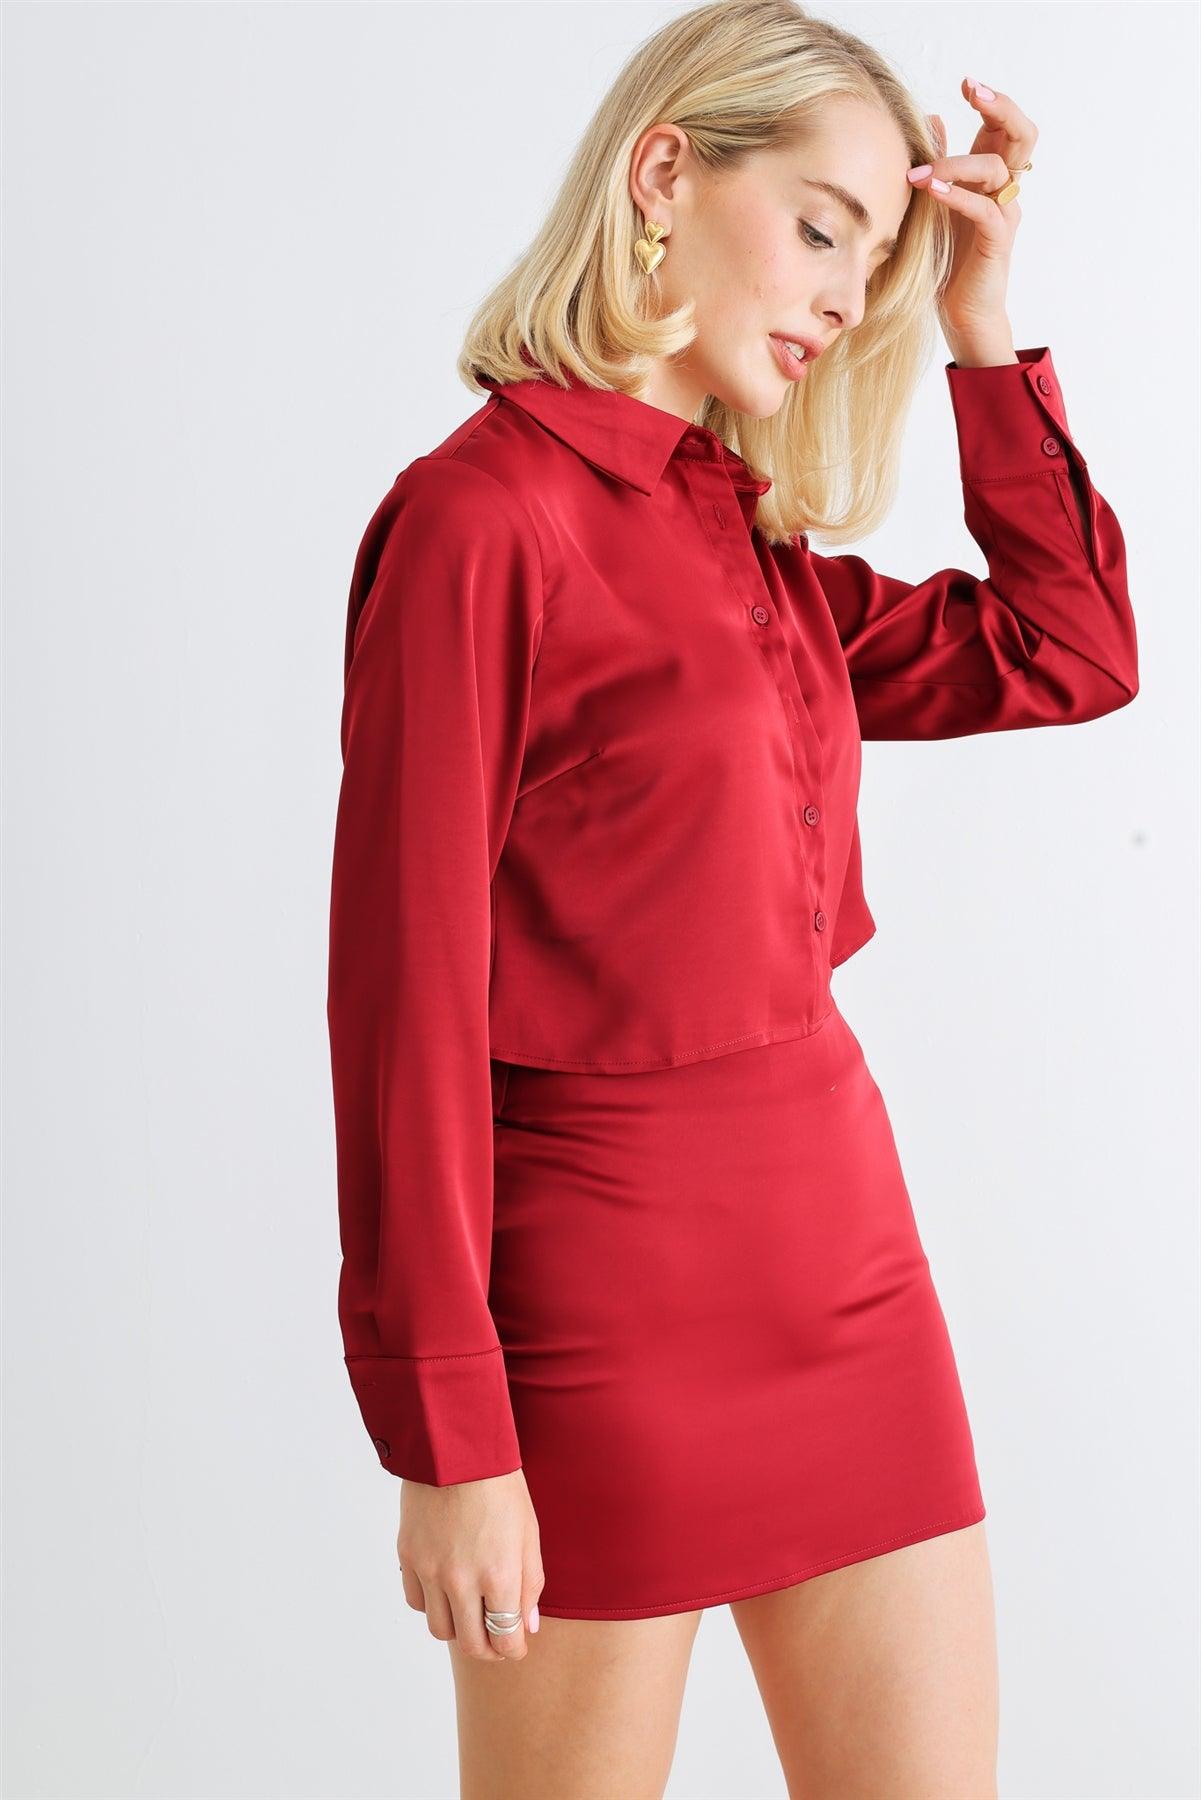 Crimson Satin Button-Up Collared Neck Long Sleeve Crop Top & High Waist Mini Skirt Set /1-2-2-1